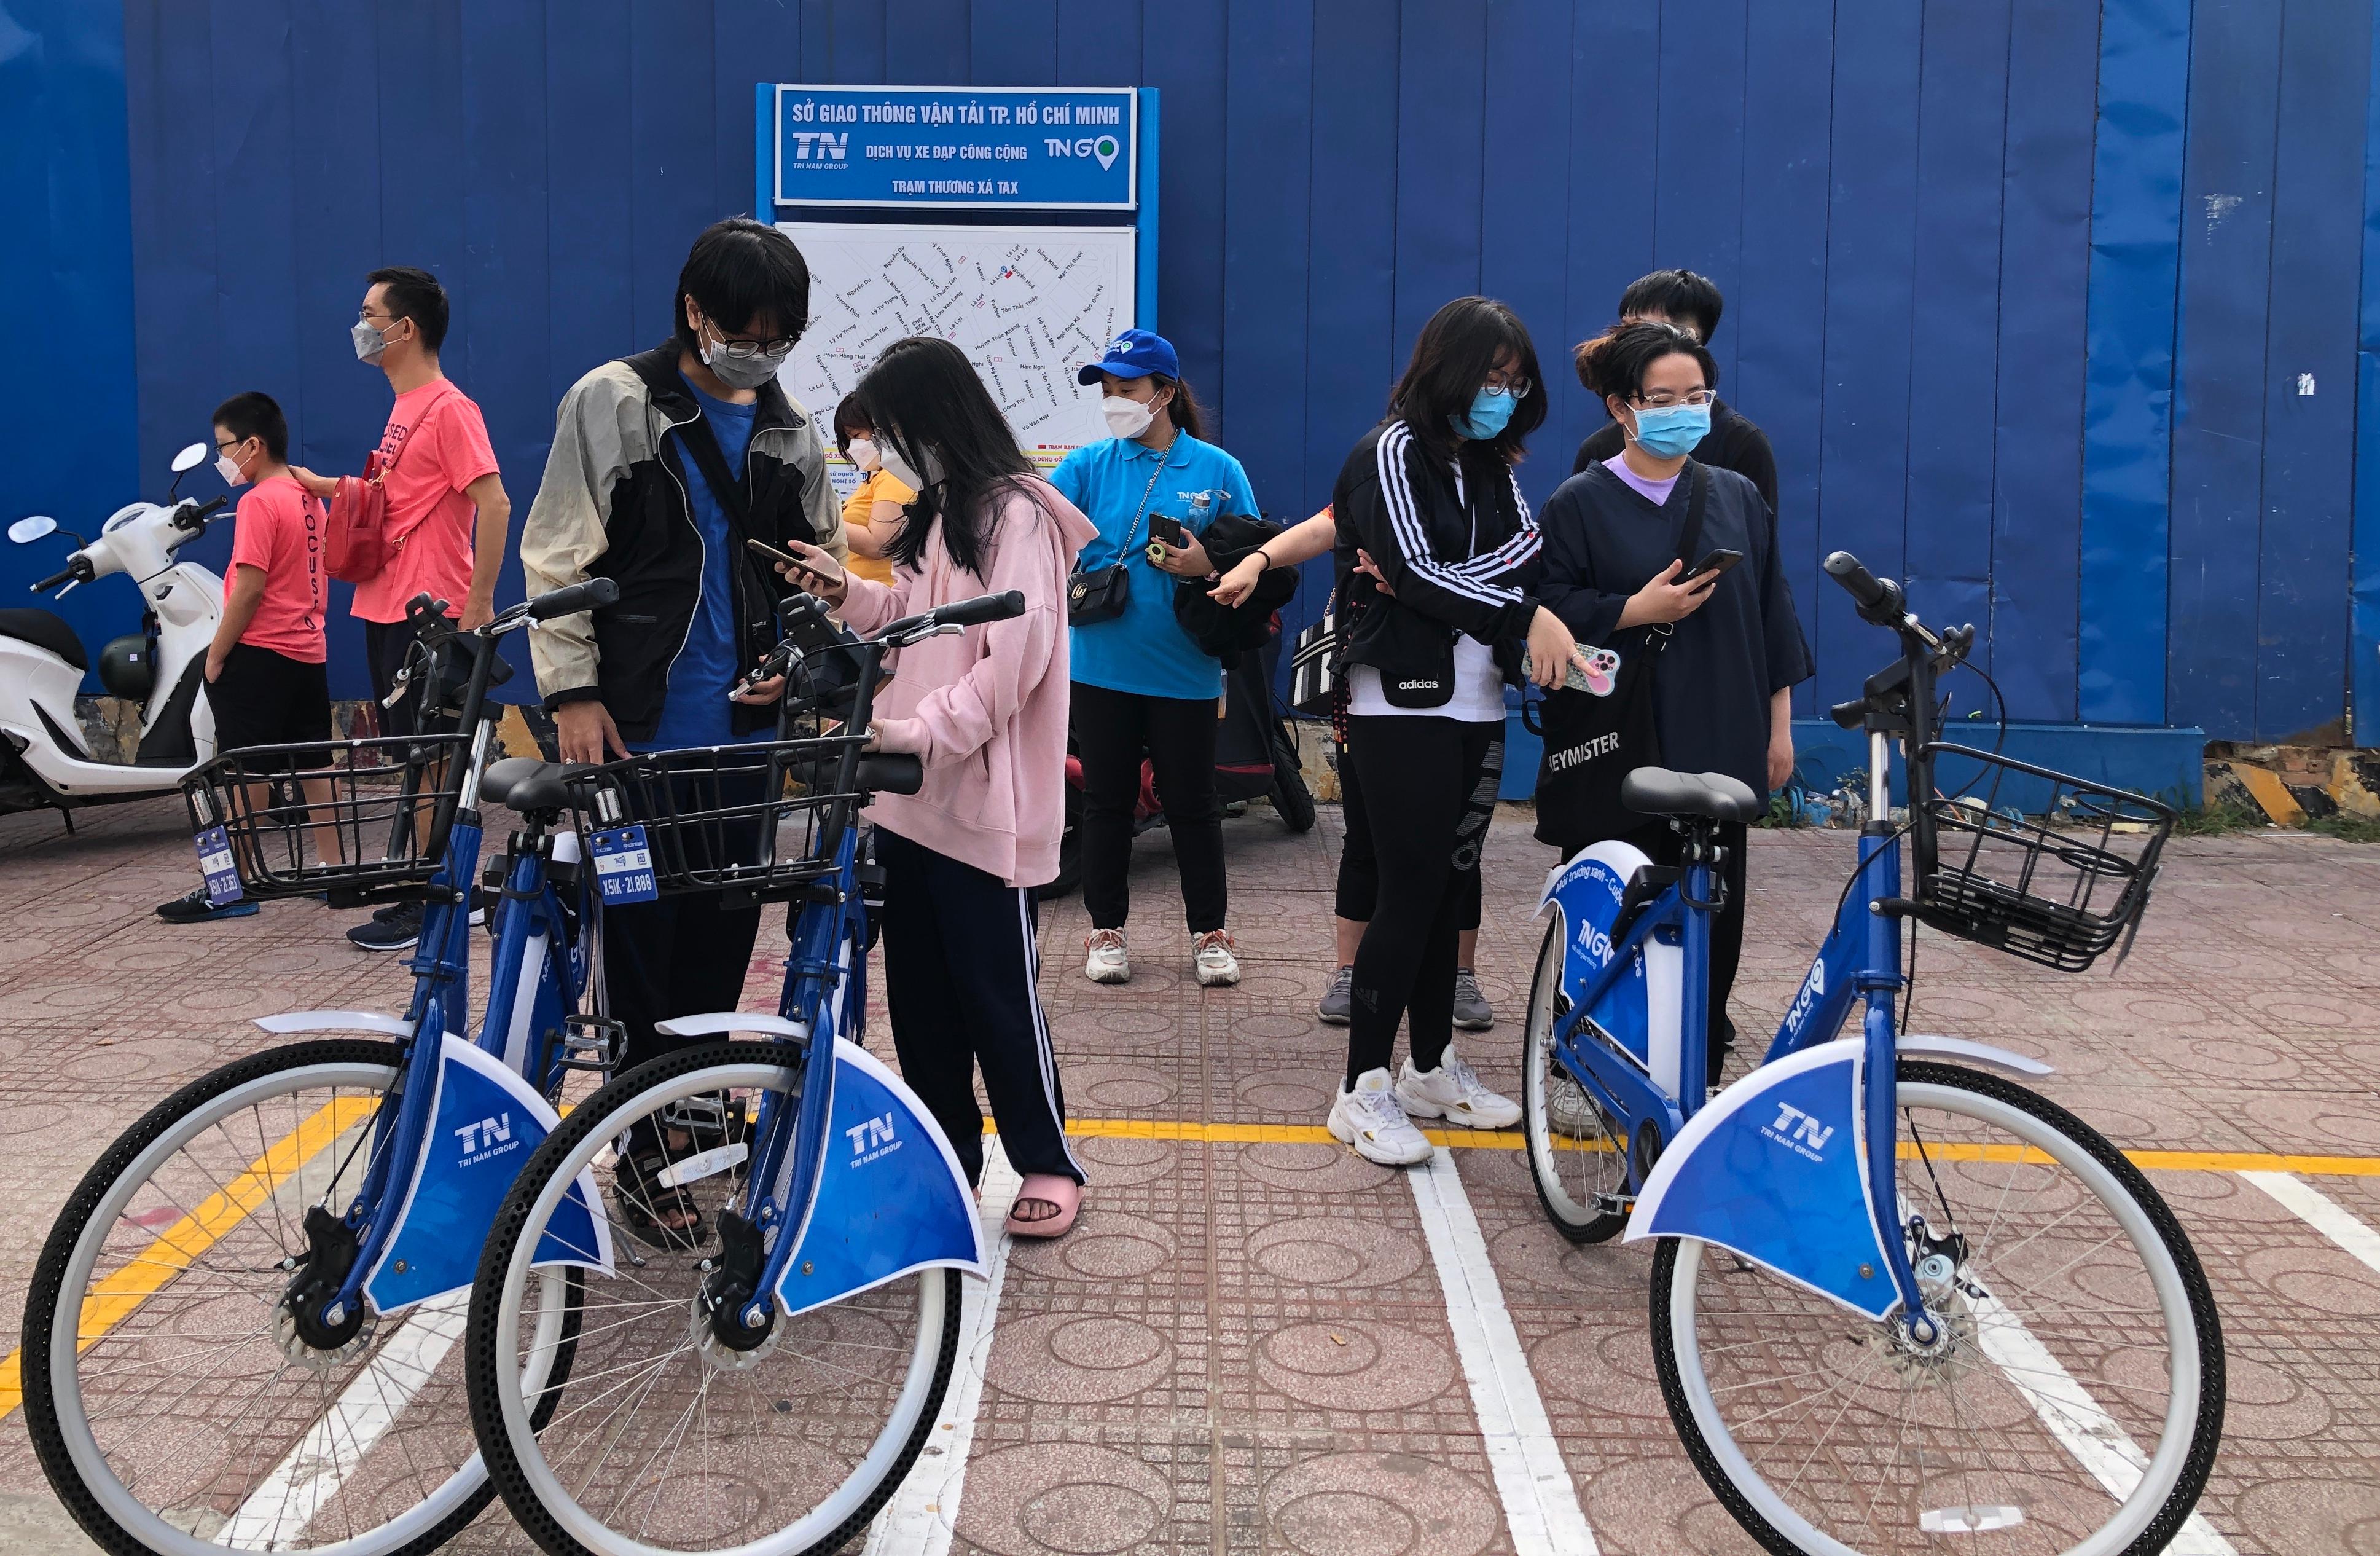 Sử dụng dịch vụ thuê xe đạp công cộng tại Sài Gòn để tận hưởng một hành trình thú vị qua các con phố cổ. Với nhiều lựa chọn về mẫu mã xe đạp, bạn có thể dễ dàng tìm thấy chiếc xe phù hợp nhất với sở thích và nhu cầu của mình.